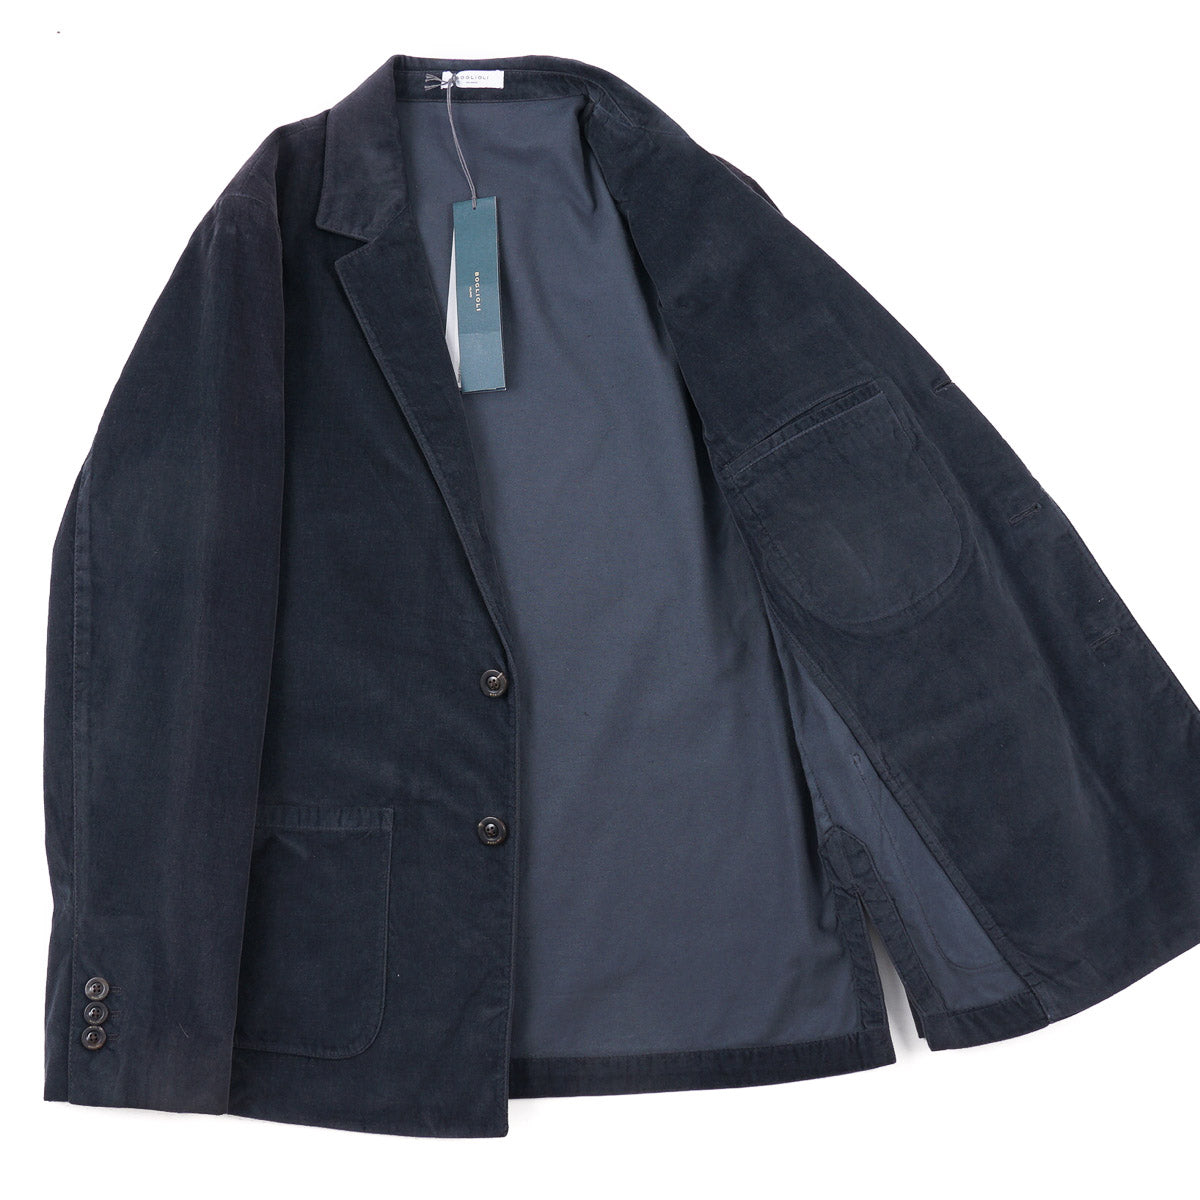 Boglioli Velvet 'Picasso Jacket' Sport Coat - Top Shelf Apparel